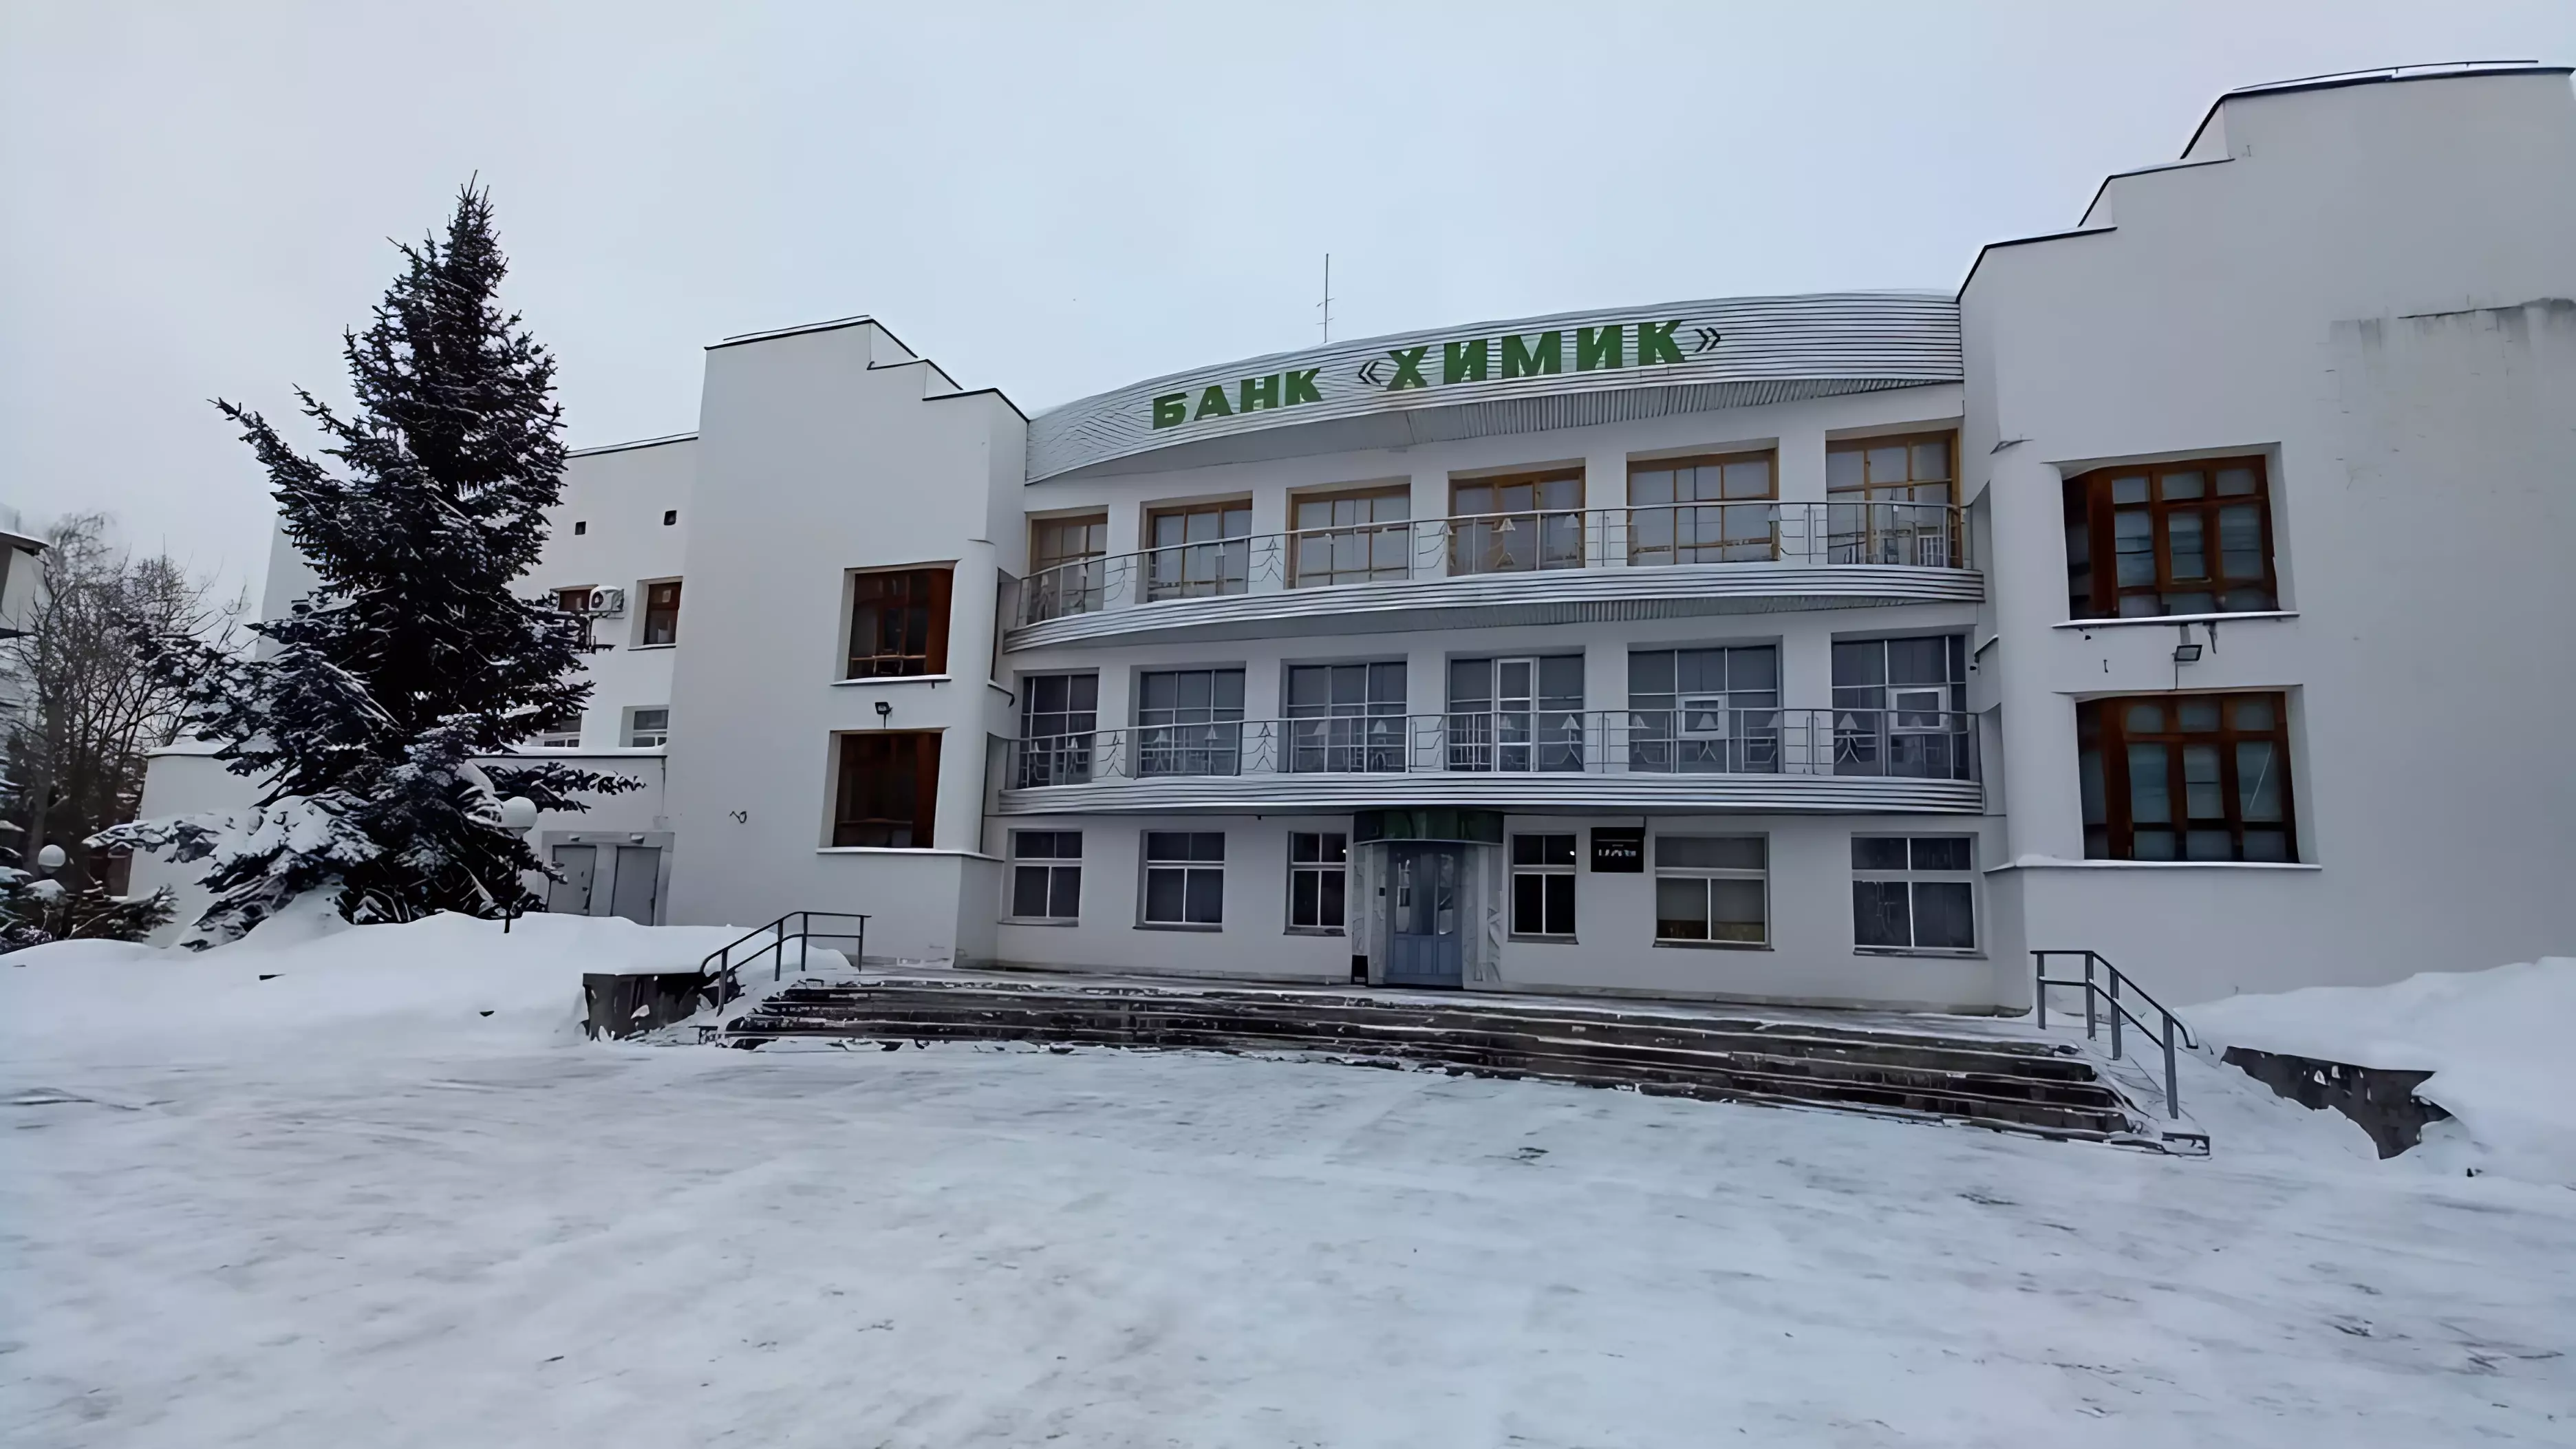 Жена нижегородского экс-депутата стала владельцем банка «Химик»